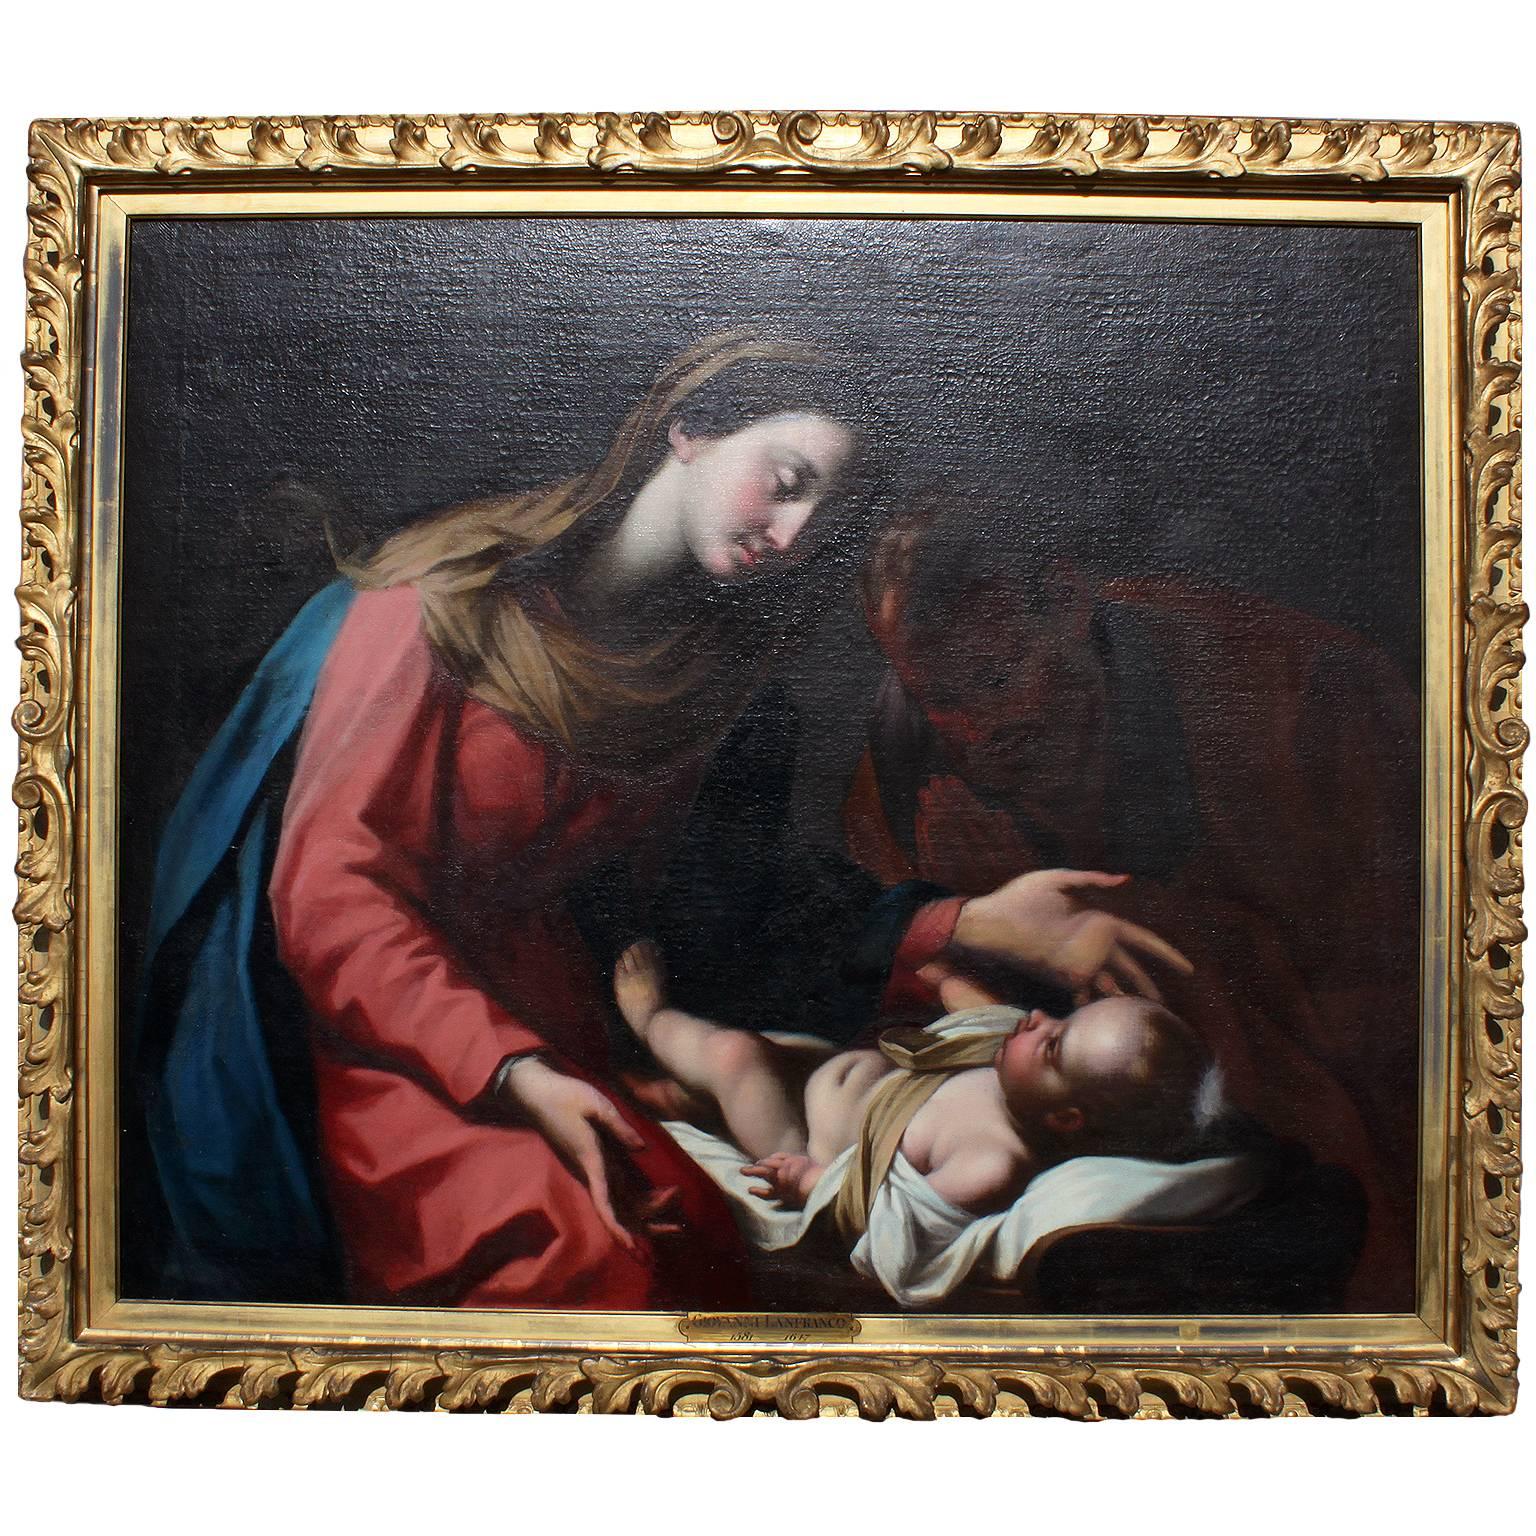 Italienisches Ölgemälde auf Leinwand, 18. Jahrhundert, „Madonna und Kind“, nach Giovanni Lanfranco